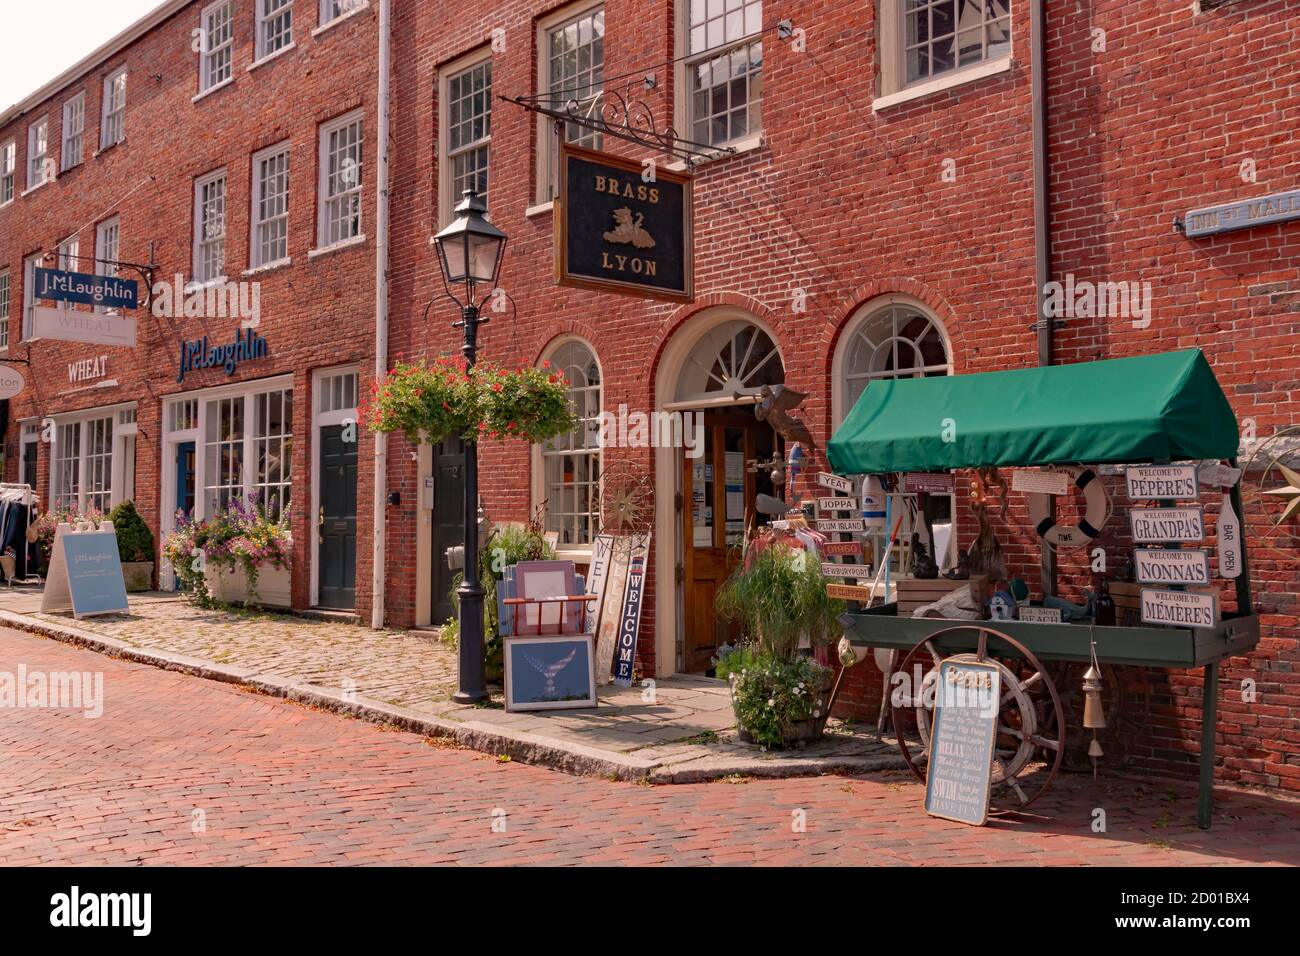 Boutique de souvenirs de Brass Lyon, dans le centre-ville historique de Market Square, Newburyport, Massachusetts. Banque D'Images